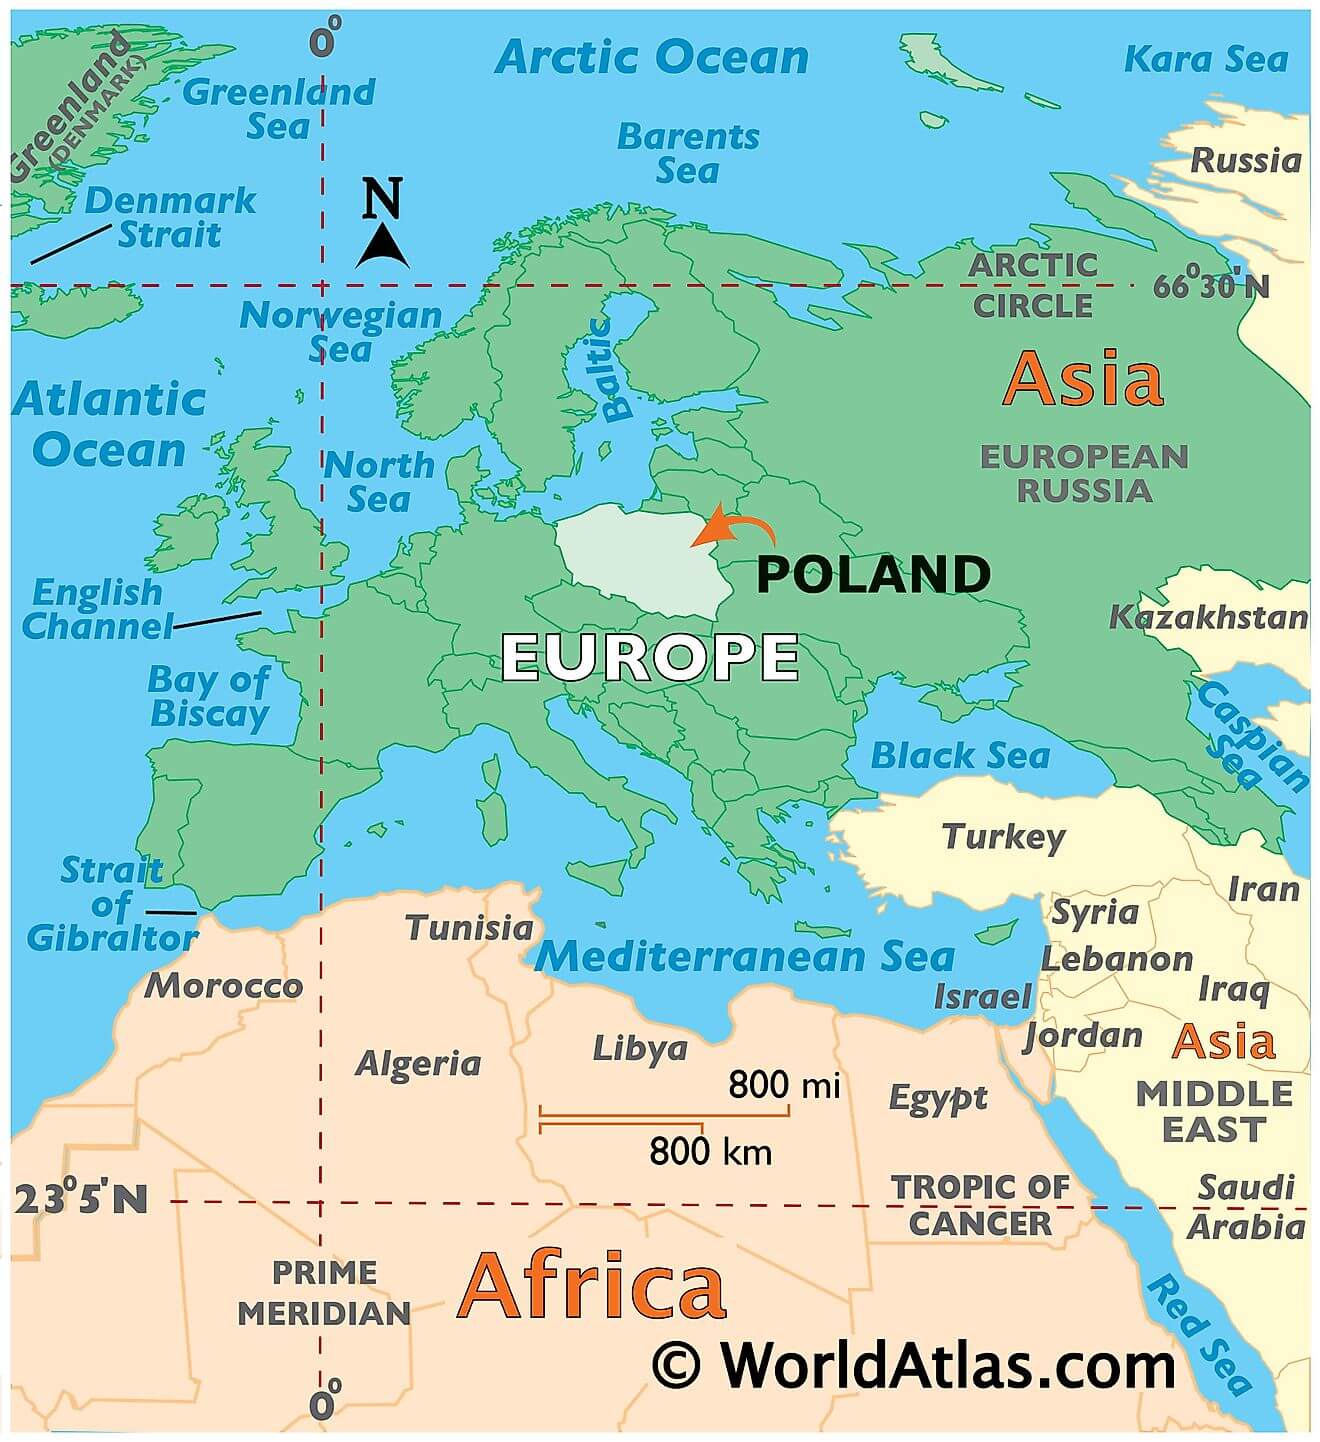 Where is Poland?